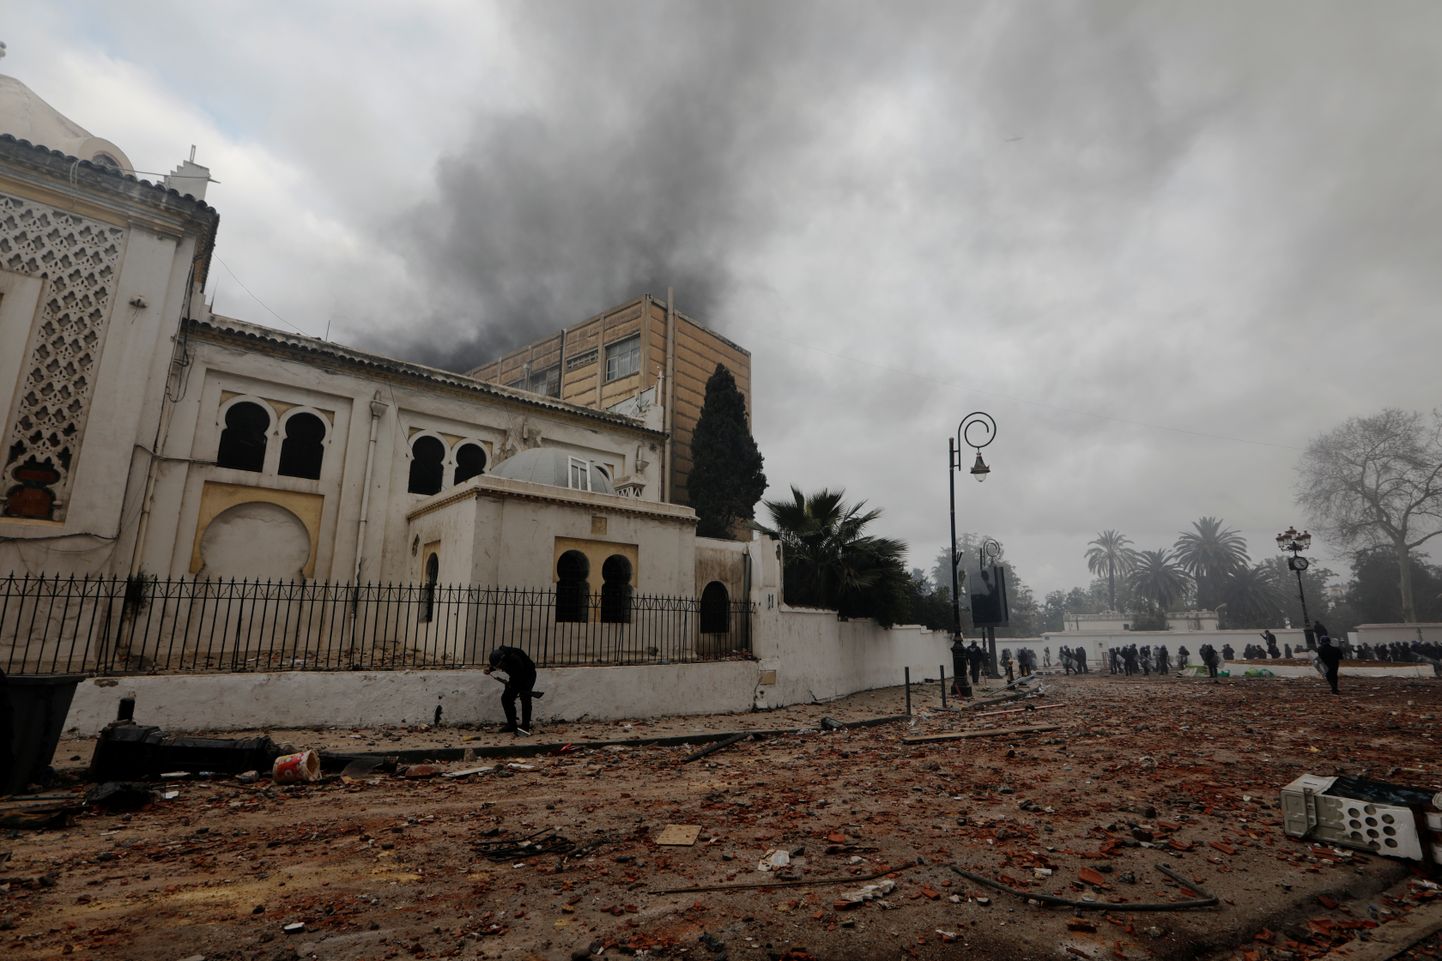 Riiklik antiikesemete ja islamikunstide muuseum langes meeleavalduste käigus rüüstajate ohvriks.